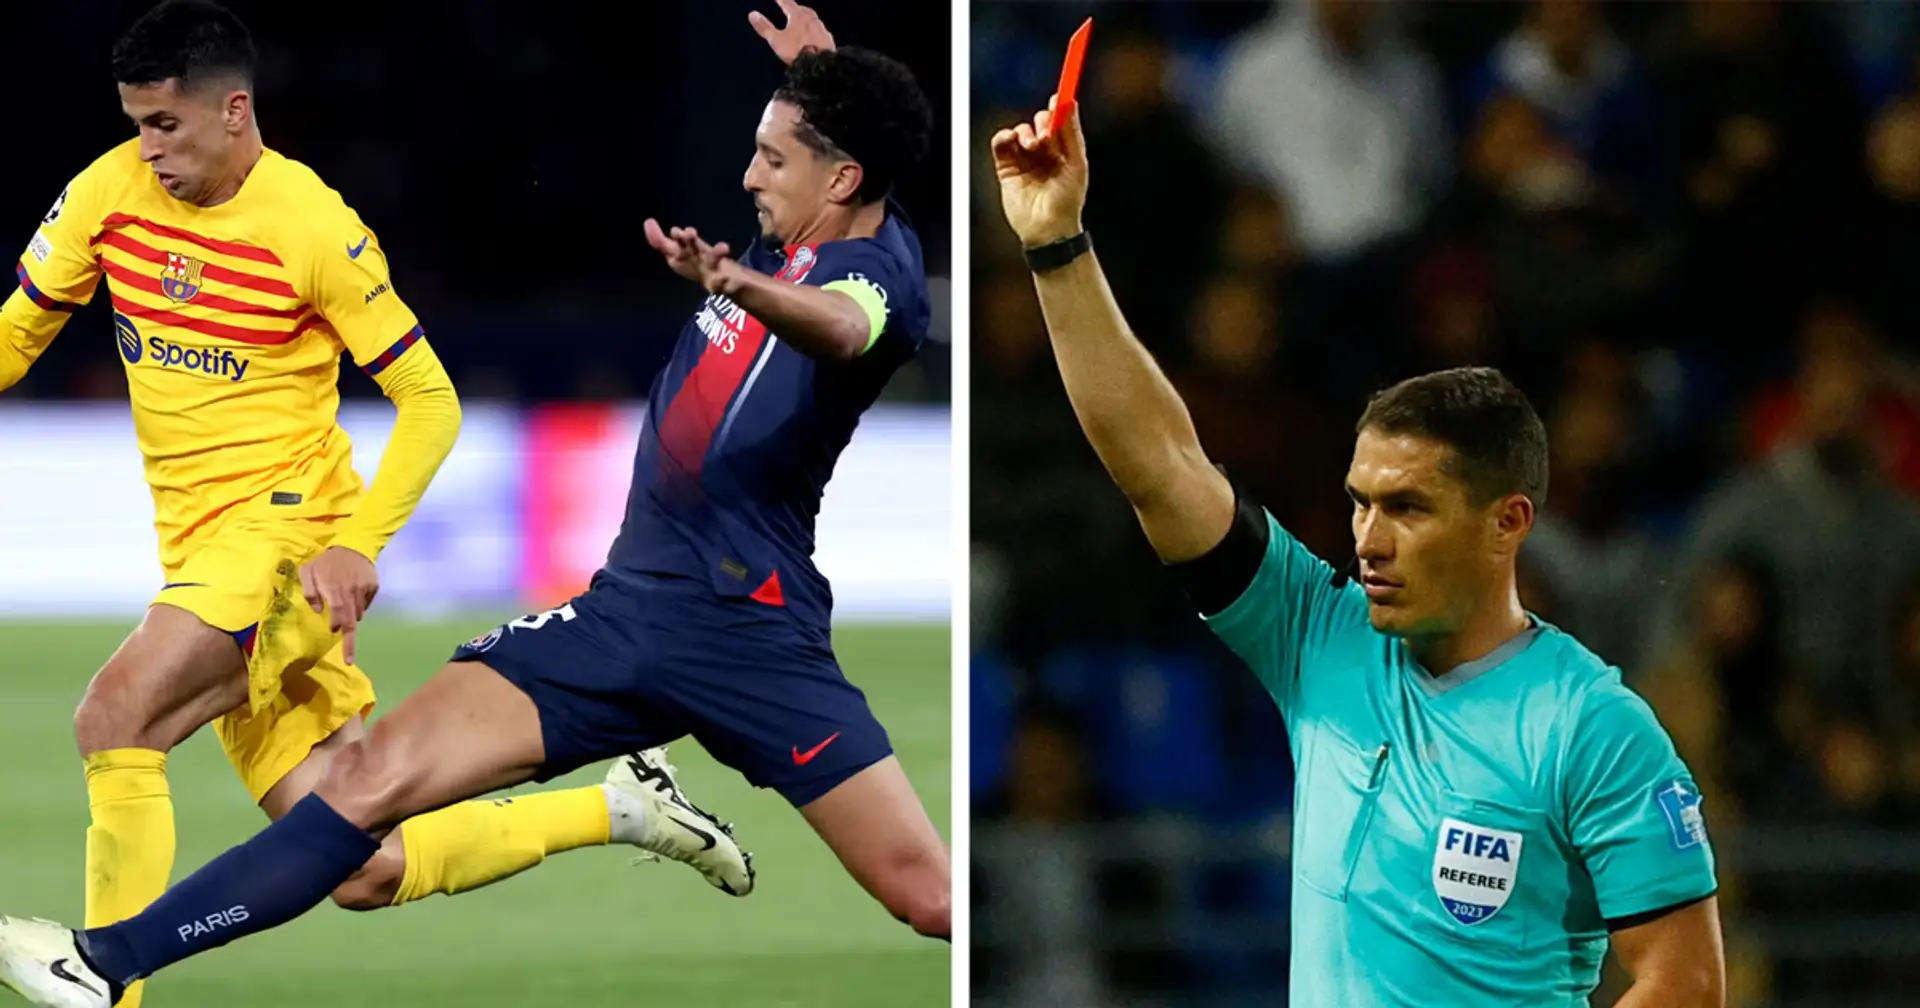 REVEALED: Referee named for Barcelona-PSG second leg showdown